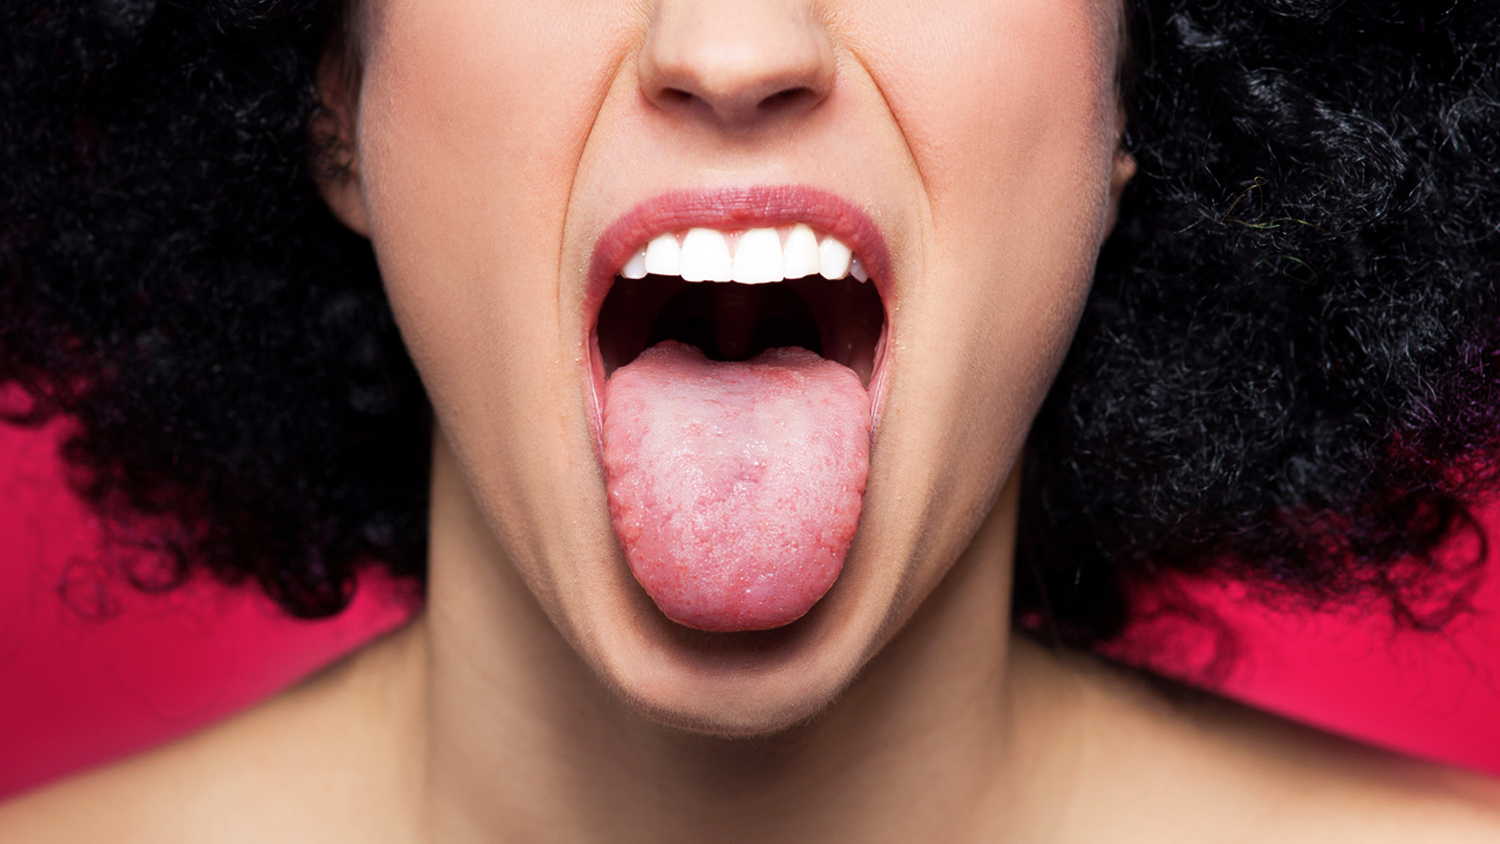 Язык высунутый изо рта. Открытый женский рот. Красивый человеческий язык.